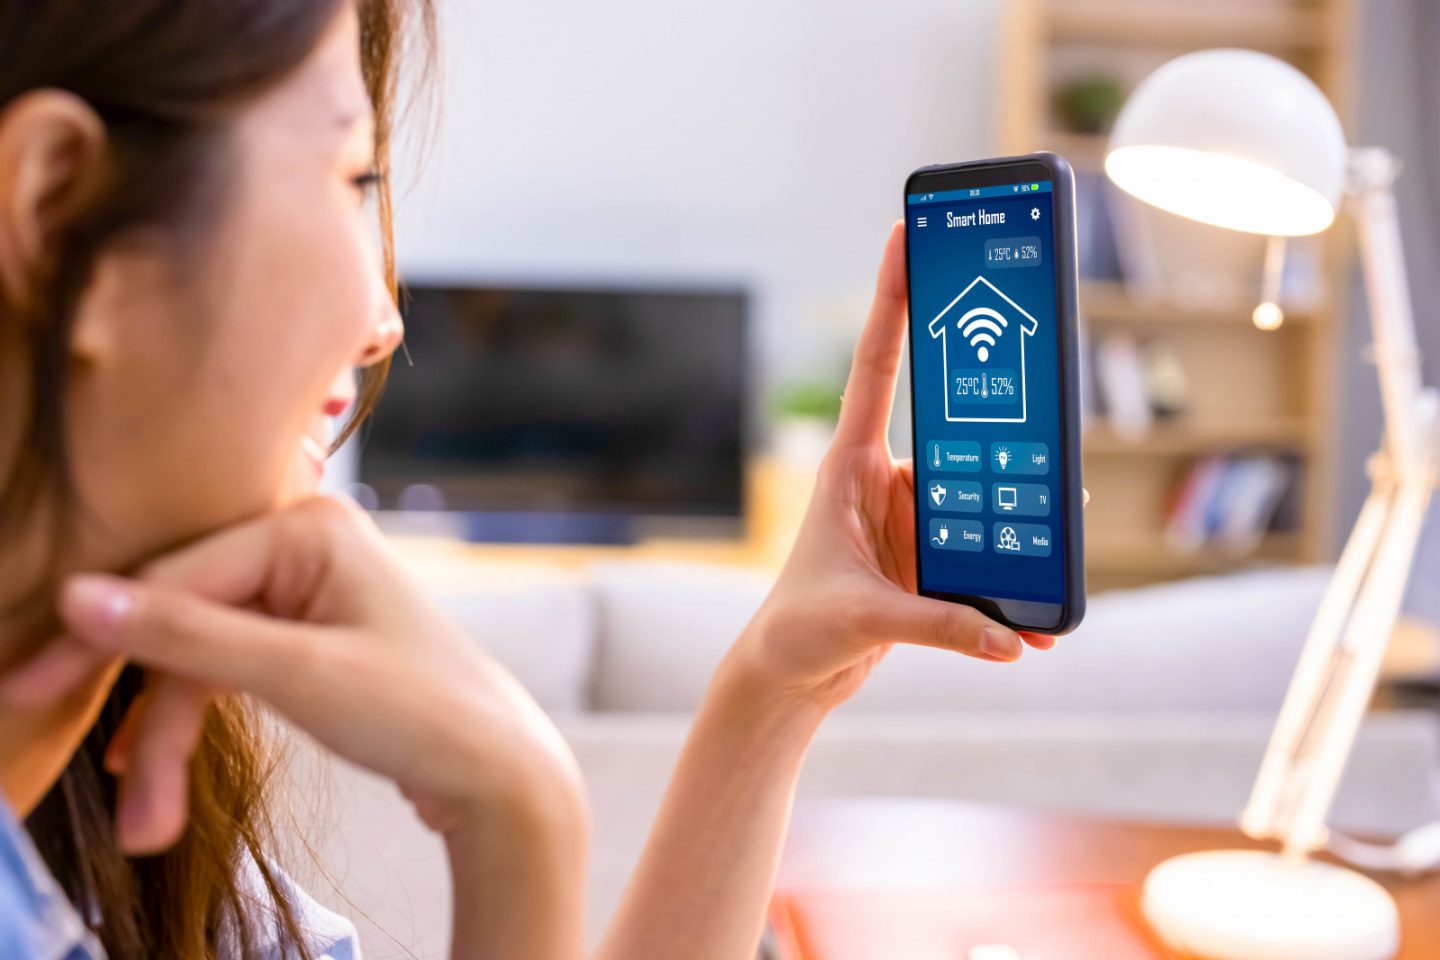 sistem smart home terbaik di 2022, best smart home system in 2022, sistem rumah pintar, google home, amazon alexa, apple home kit, samsung smart things